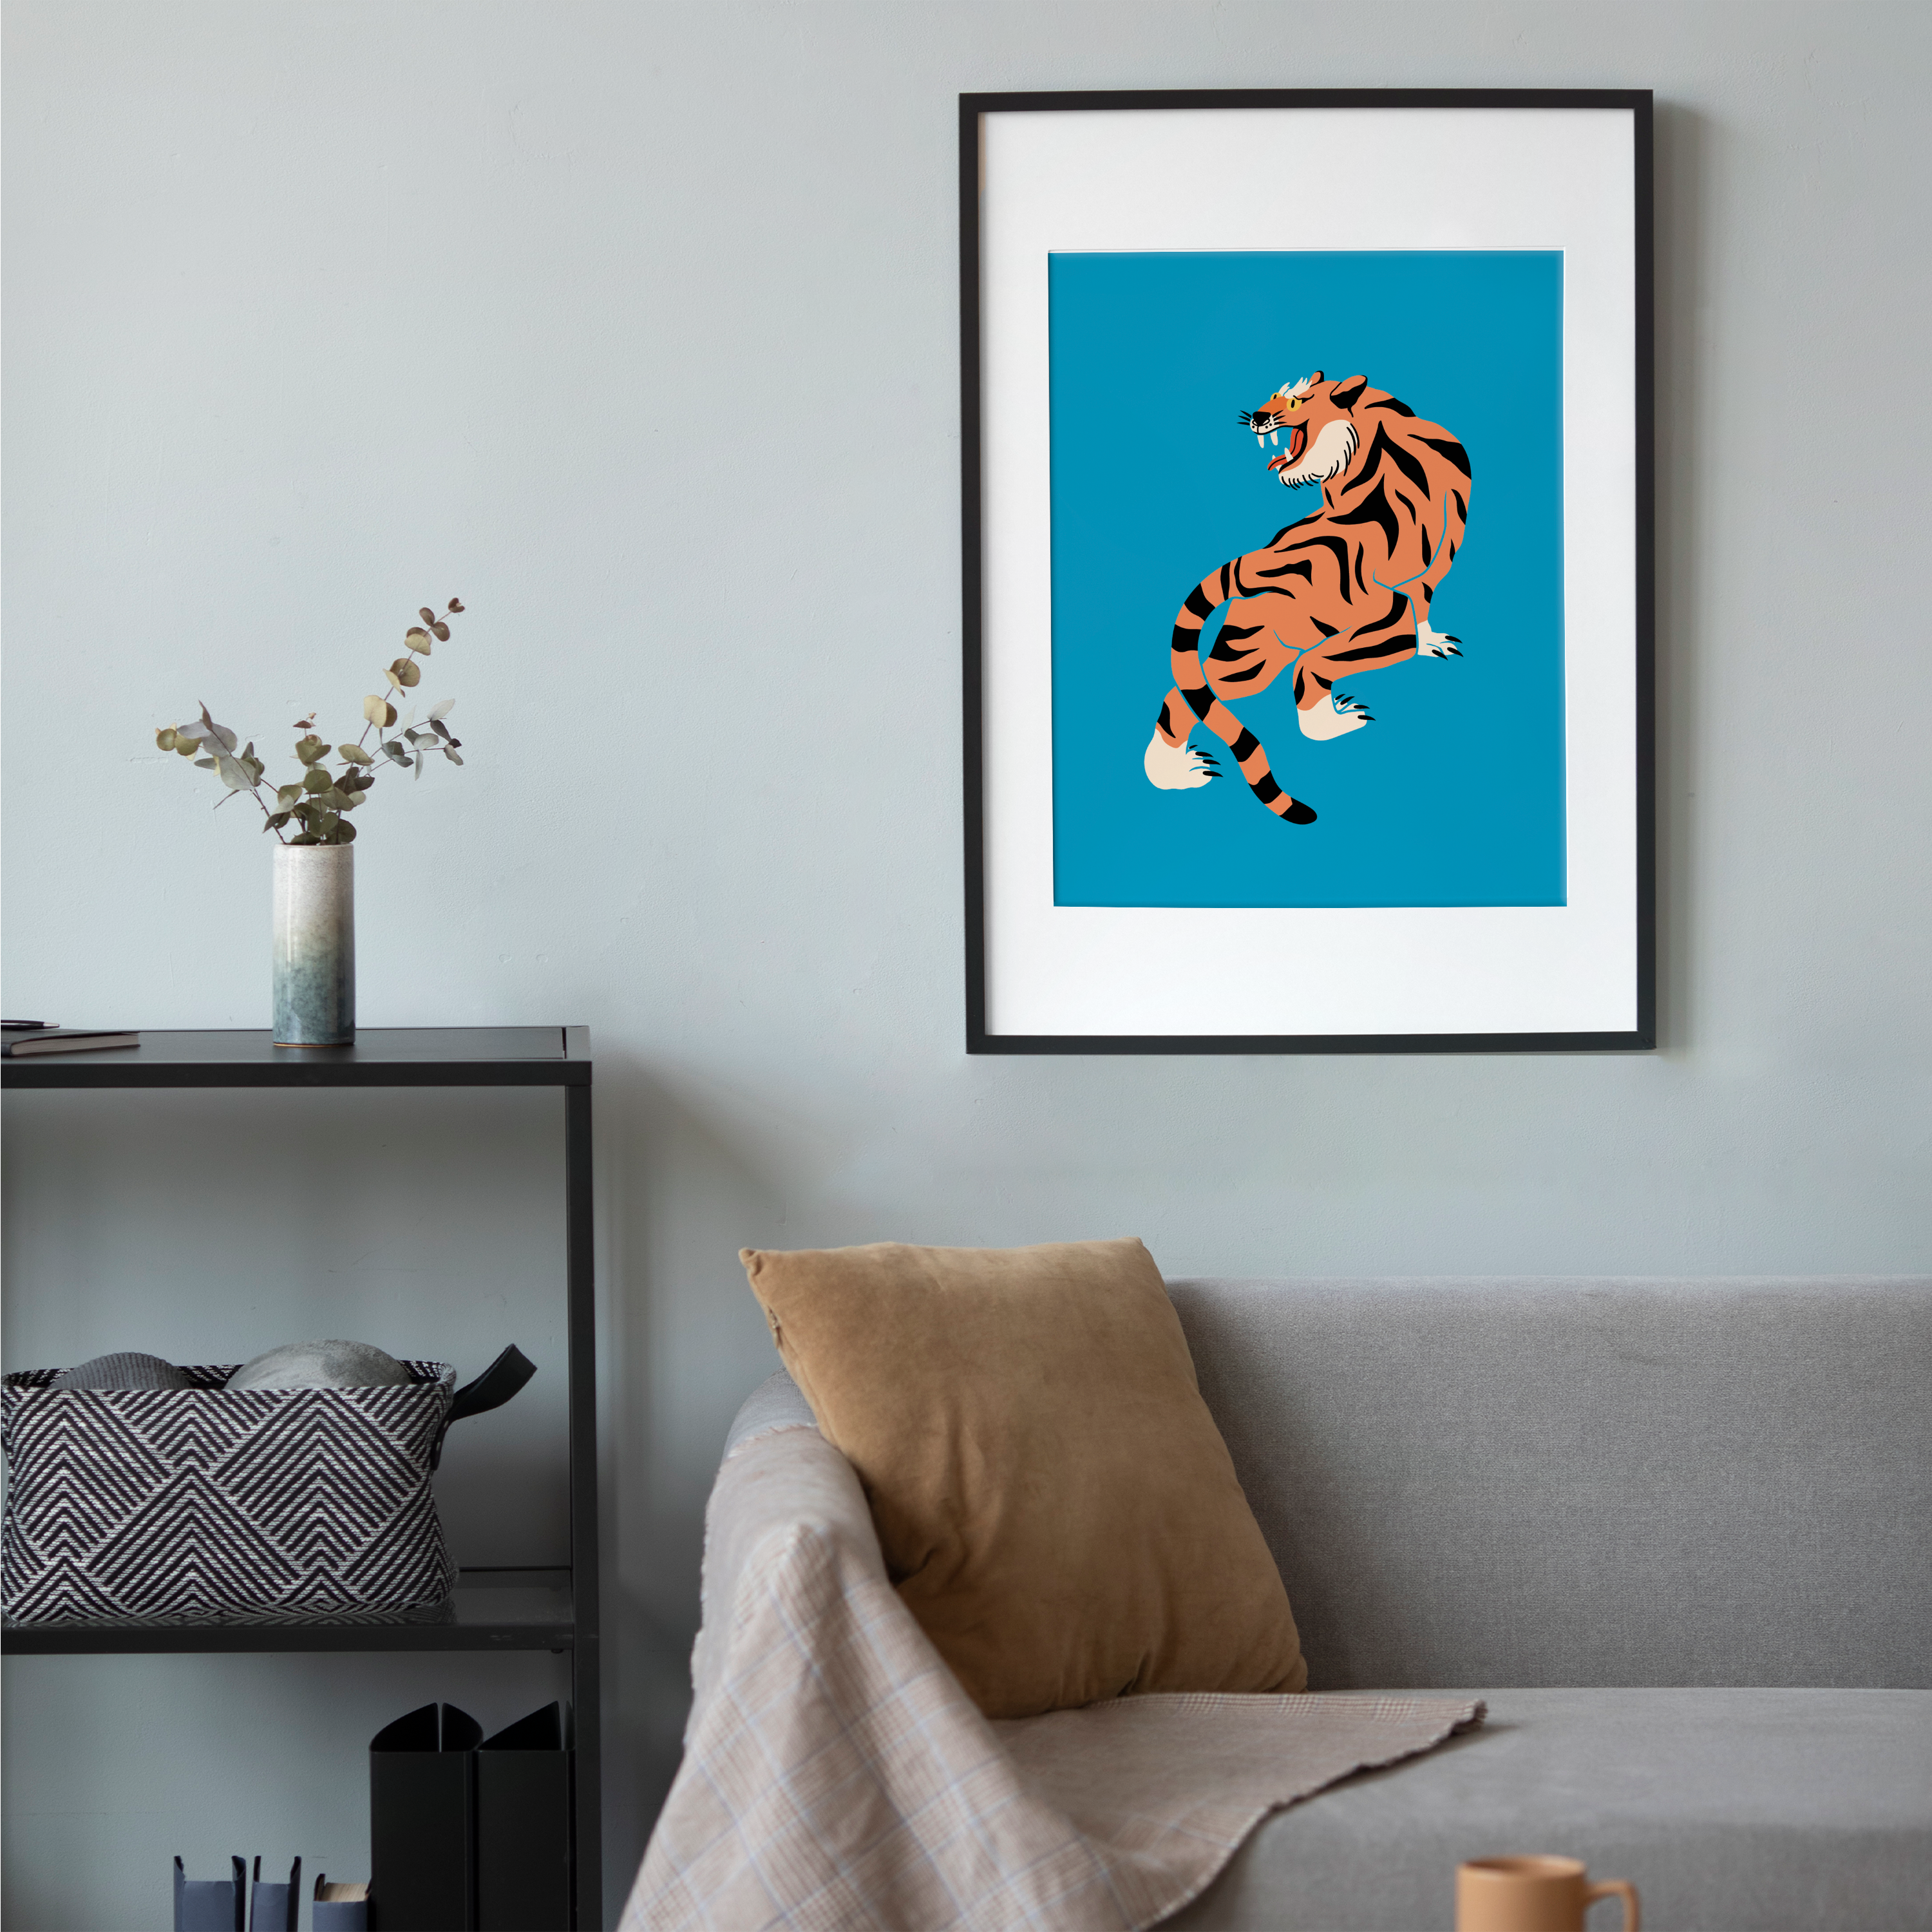 Affiche Blue Tiger cadre noir salon